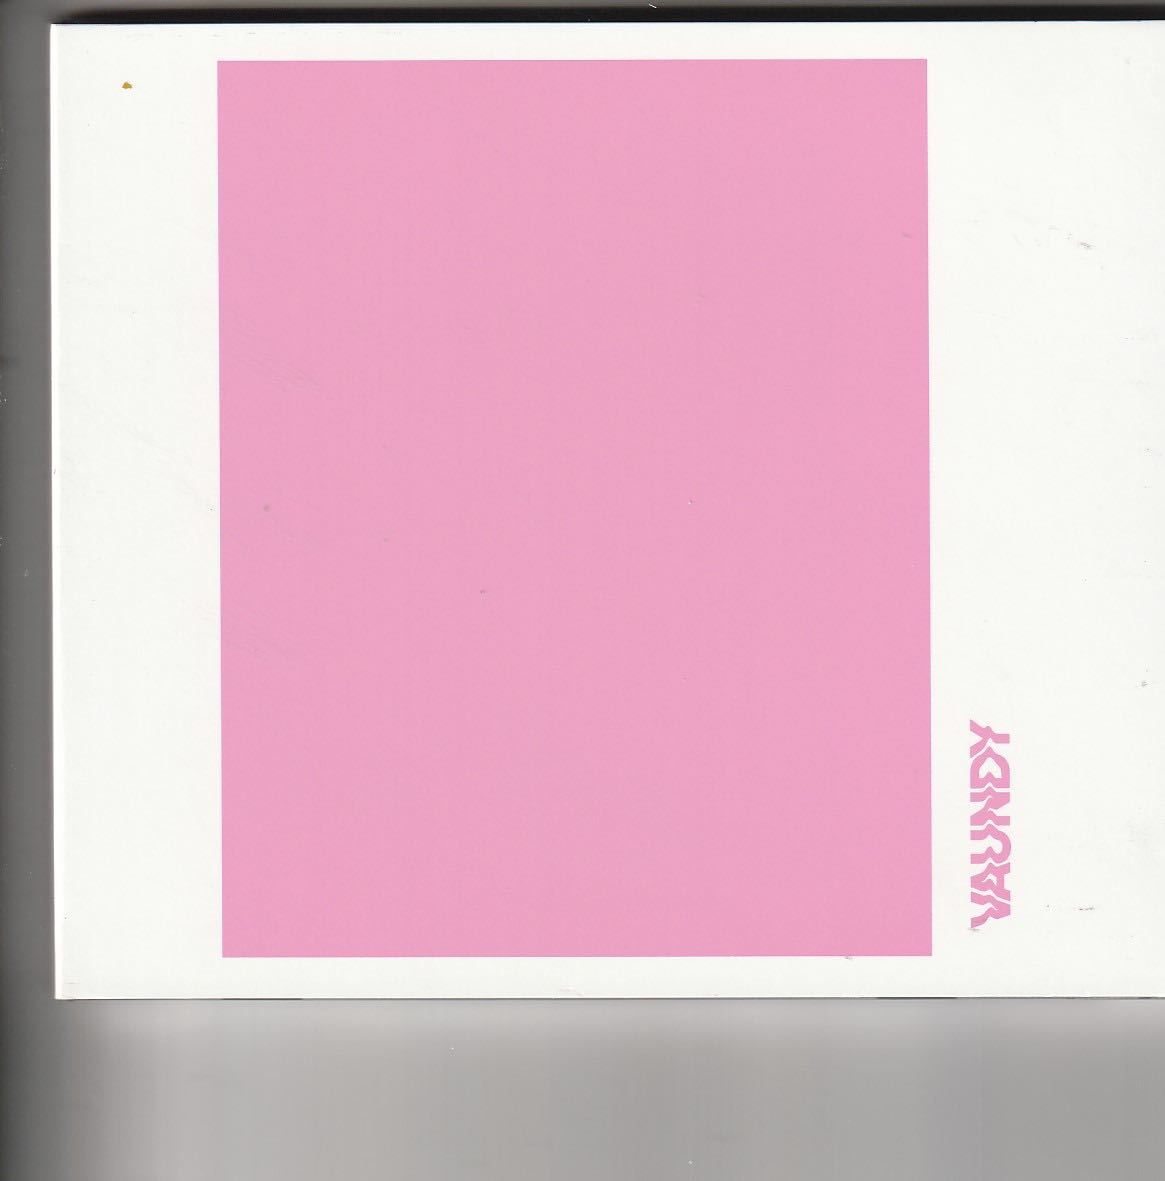 Vaundyさん strobo+ 【2020 レコードの日 限定盤】 (カラーヴァイナル